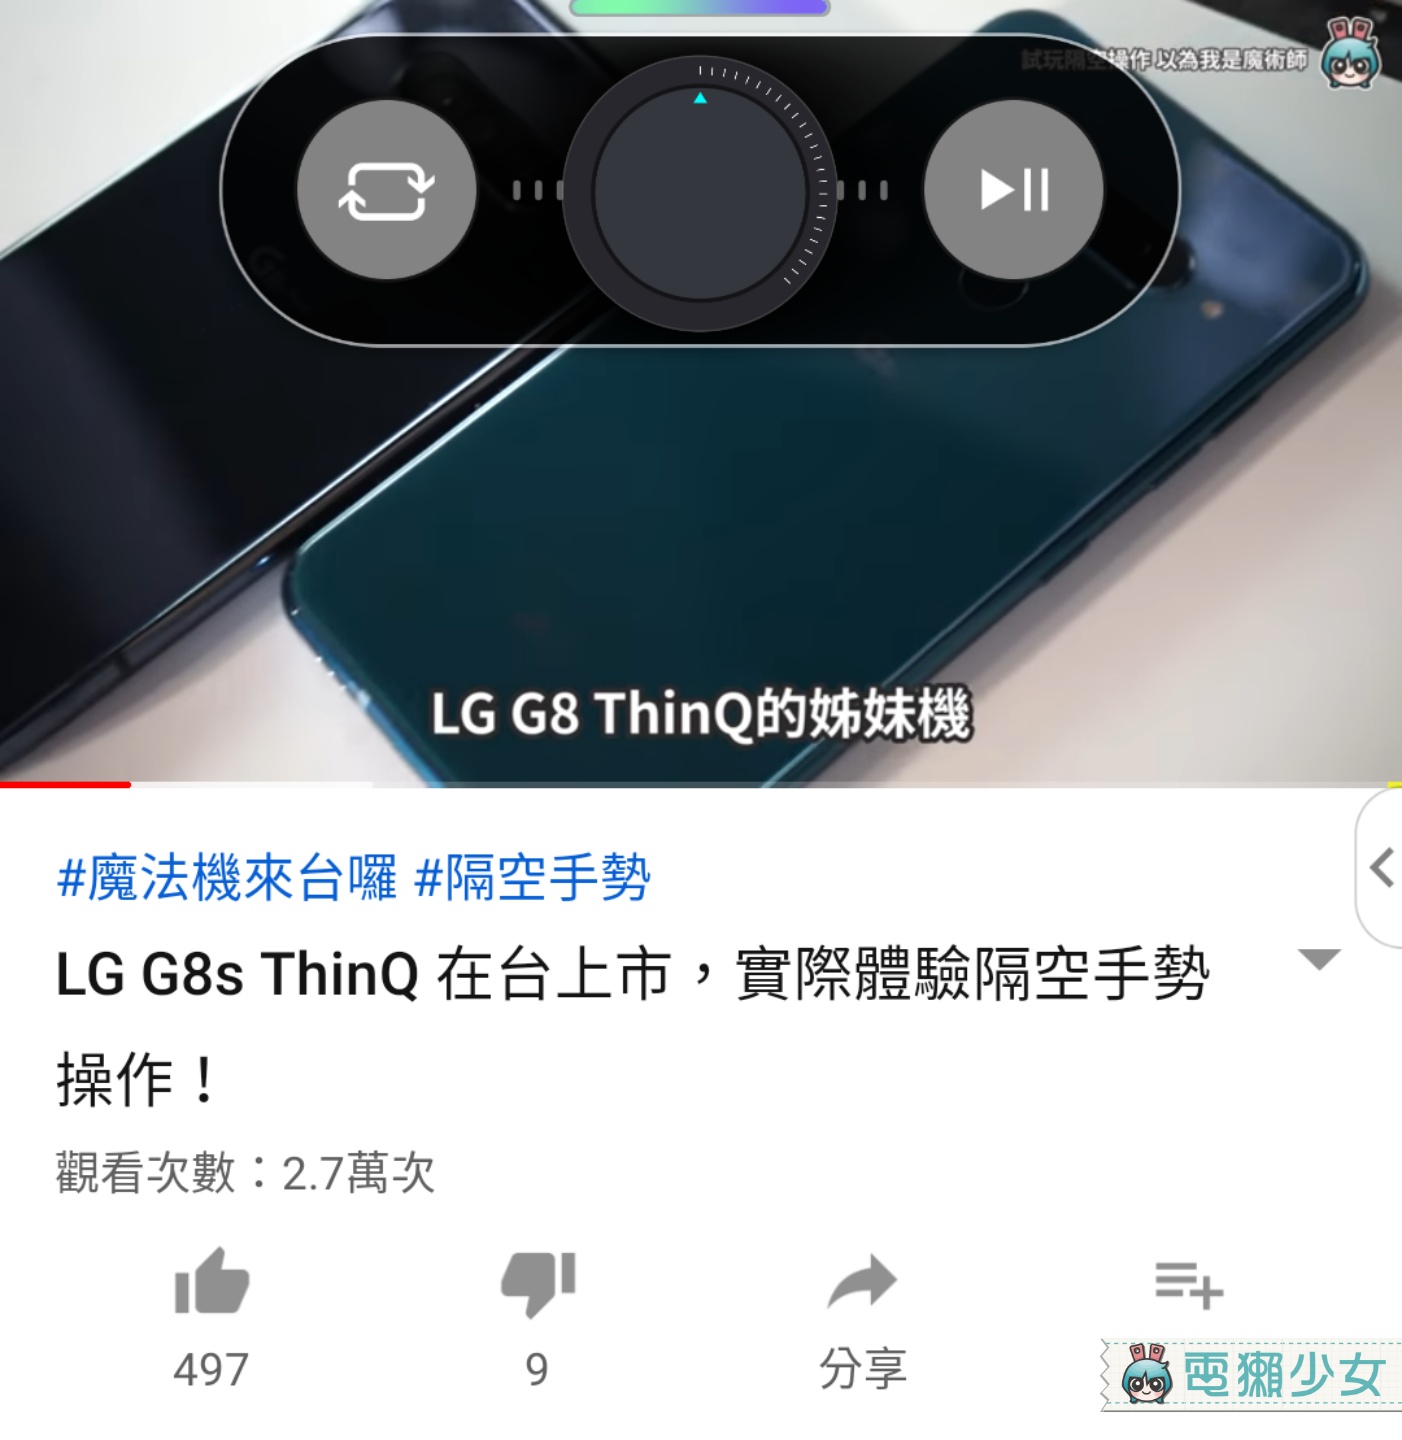 開箱 | 對著手機施展魔法吧！『 LG G8S ThinQ 』Air Motion浮空手勢、手掌靜脈解鎖實測玩給你看